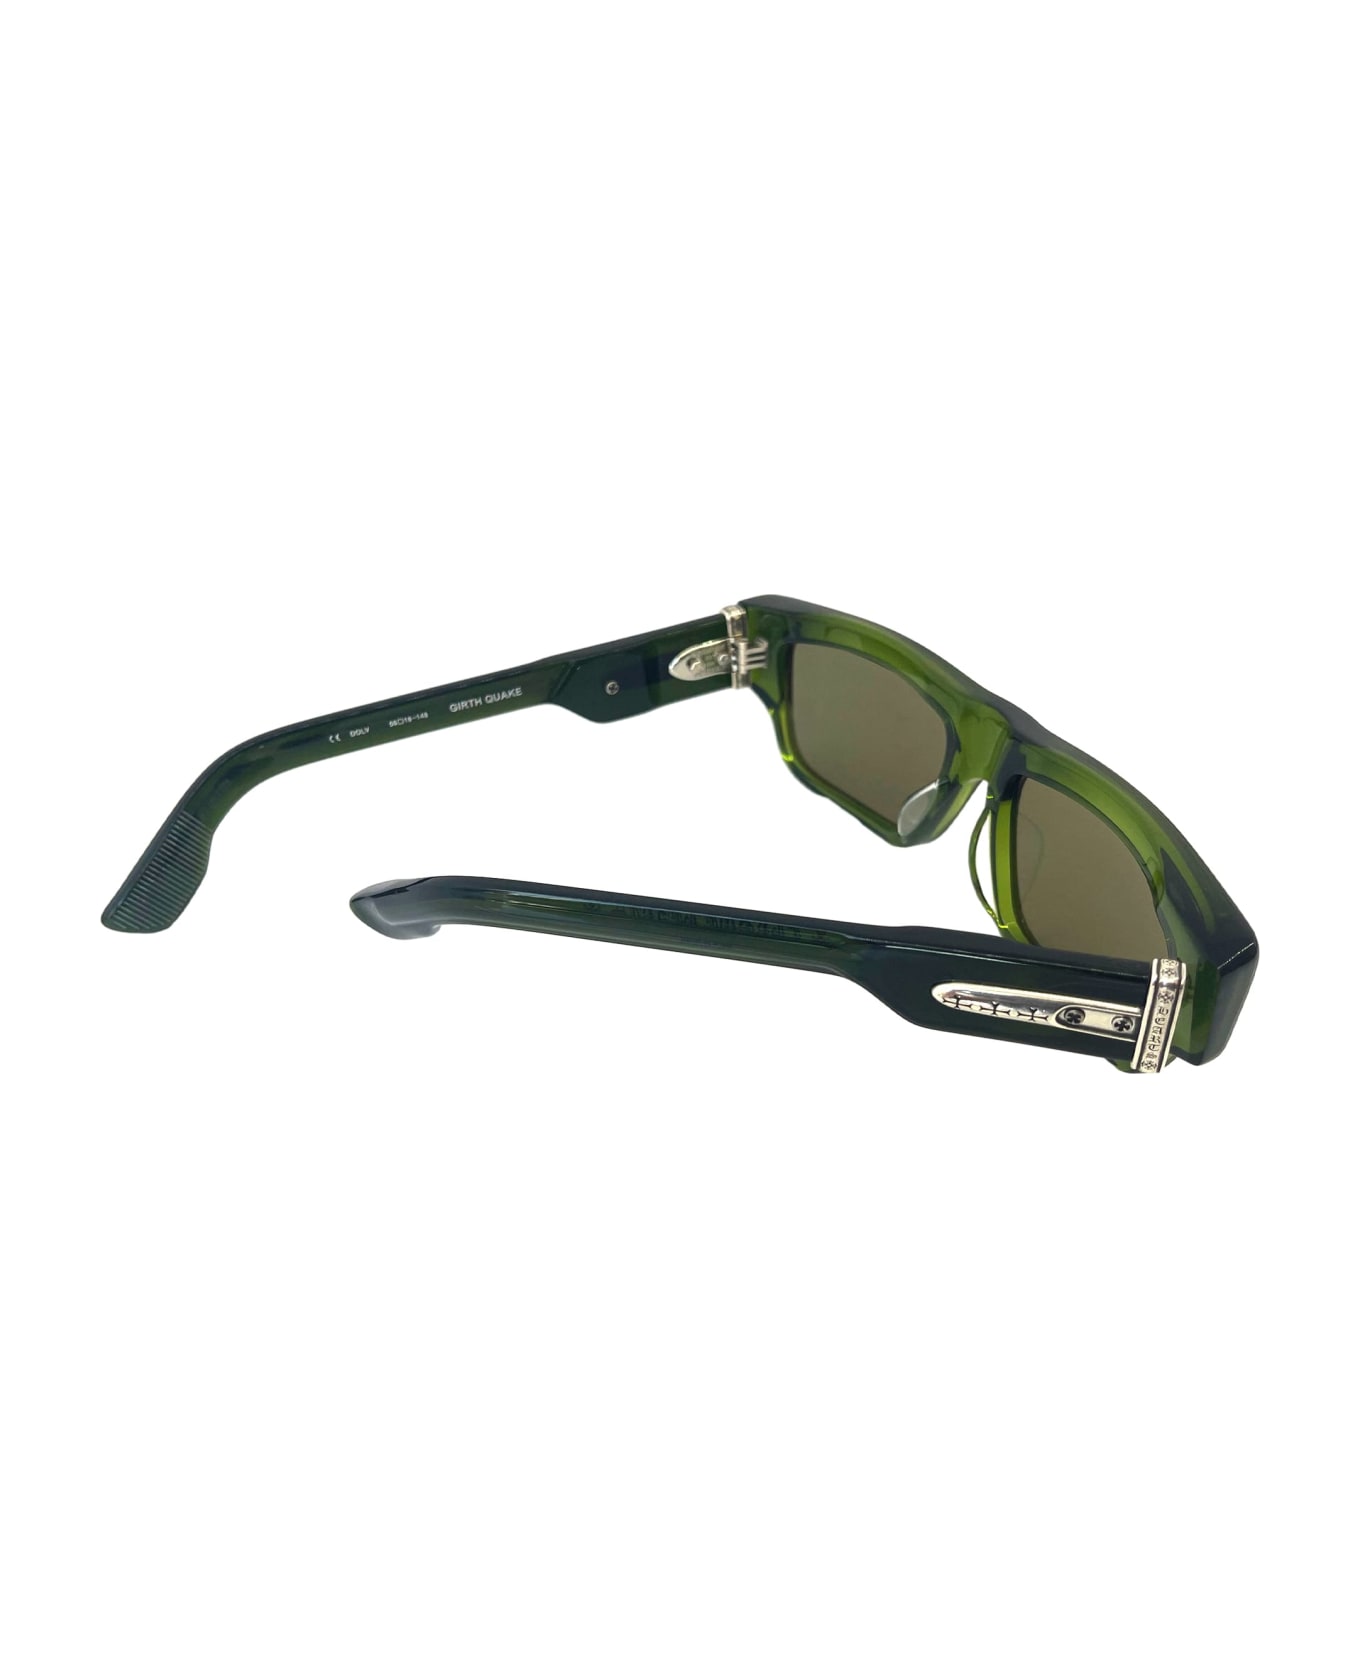 Chrome Hearts Girth Quake - Dark Olive Sunglasses - olive green サングラス